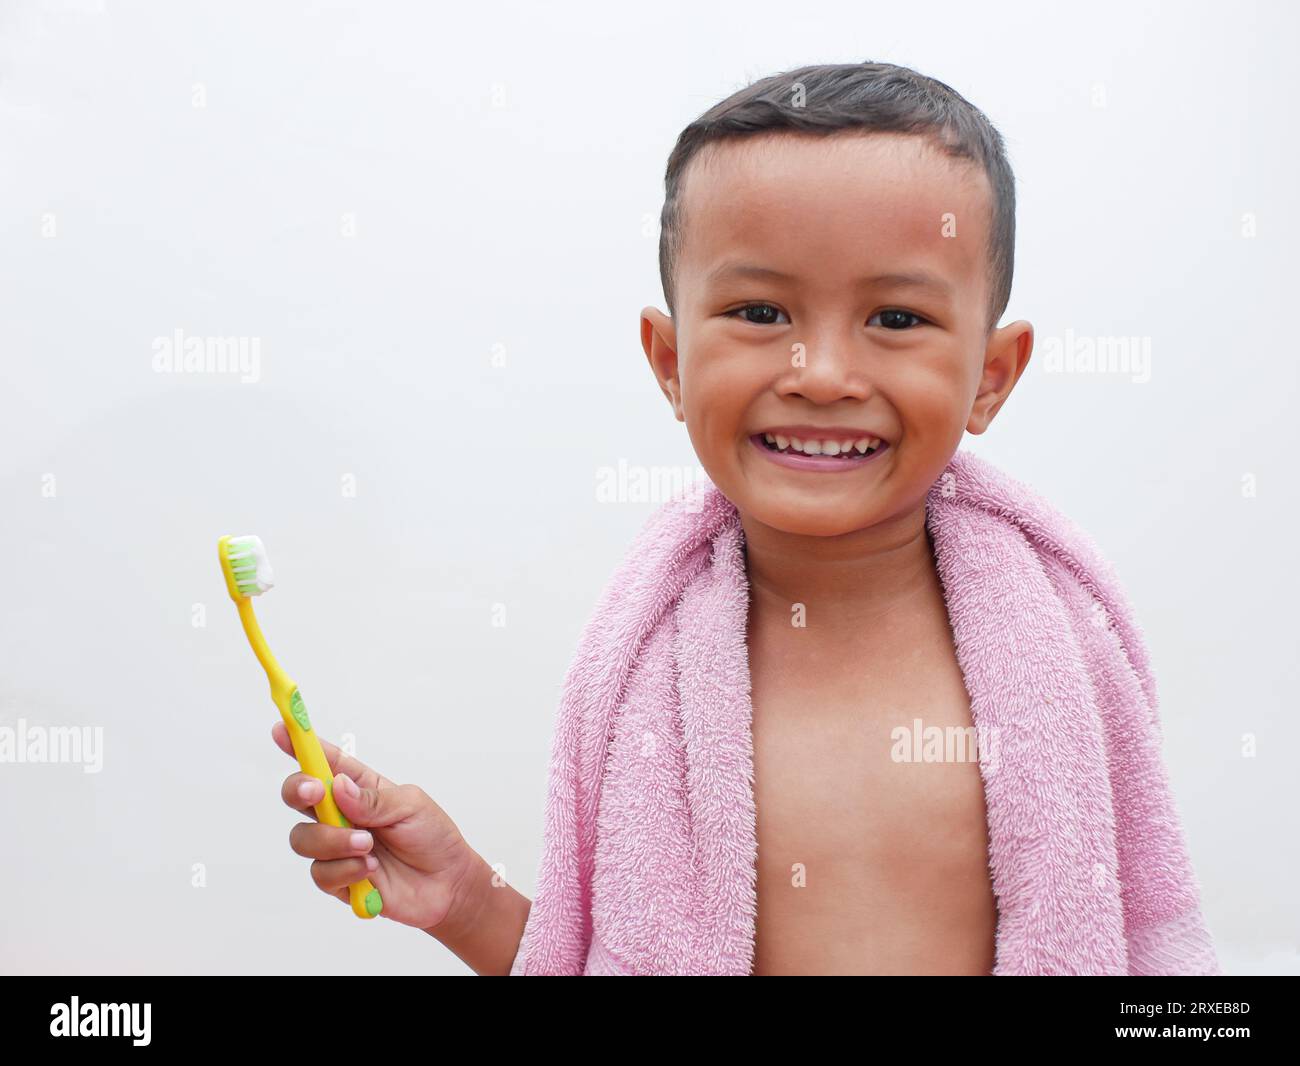 piccolo ragazzo asiatico che tiene uno spazzolino da denti sorridendo su sfondo bianco con spazio per la copia. concetto di salute dentale per bambini Foto Stock